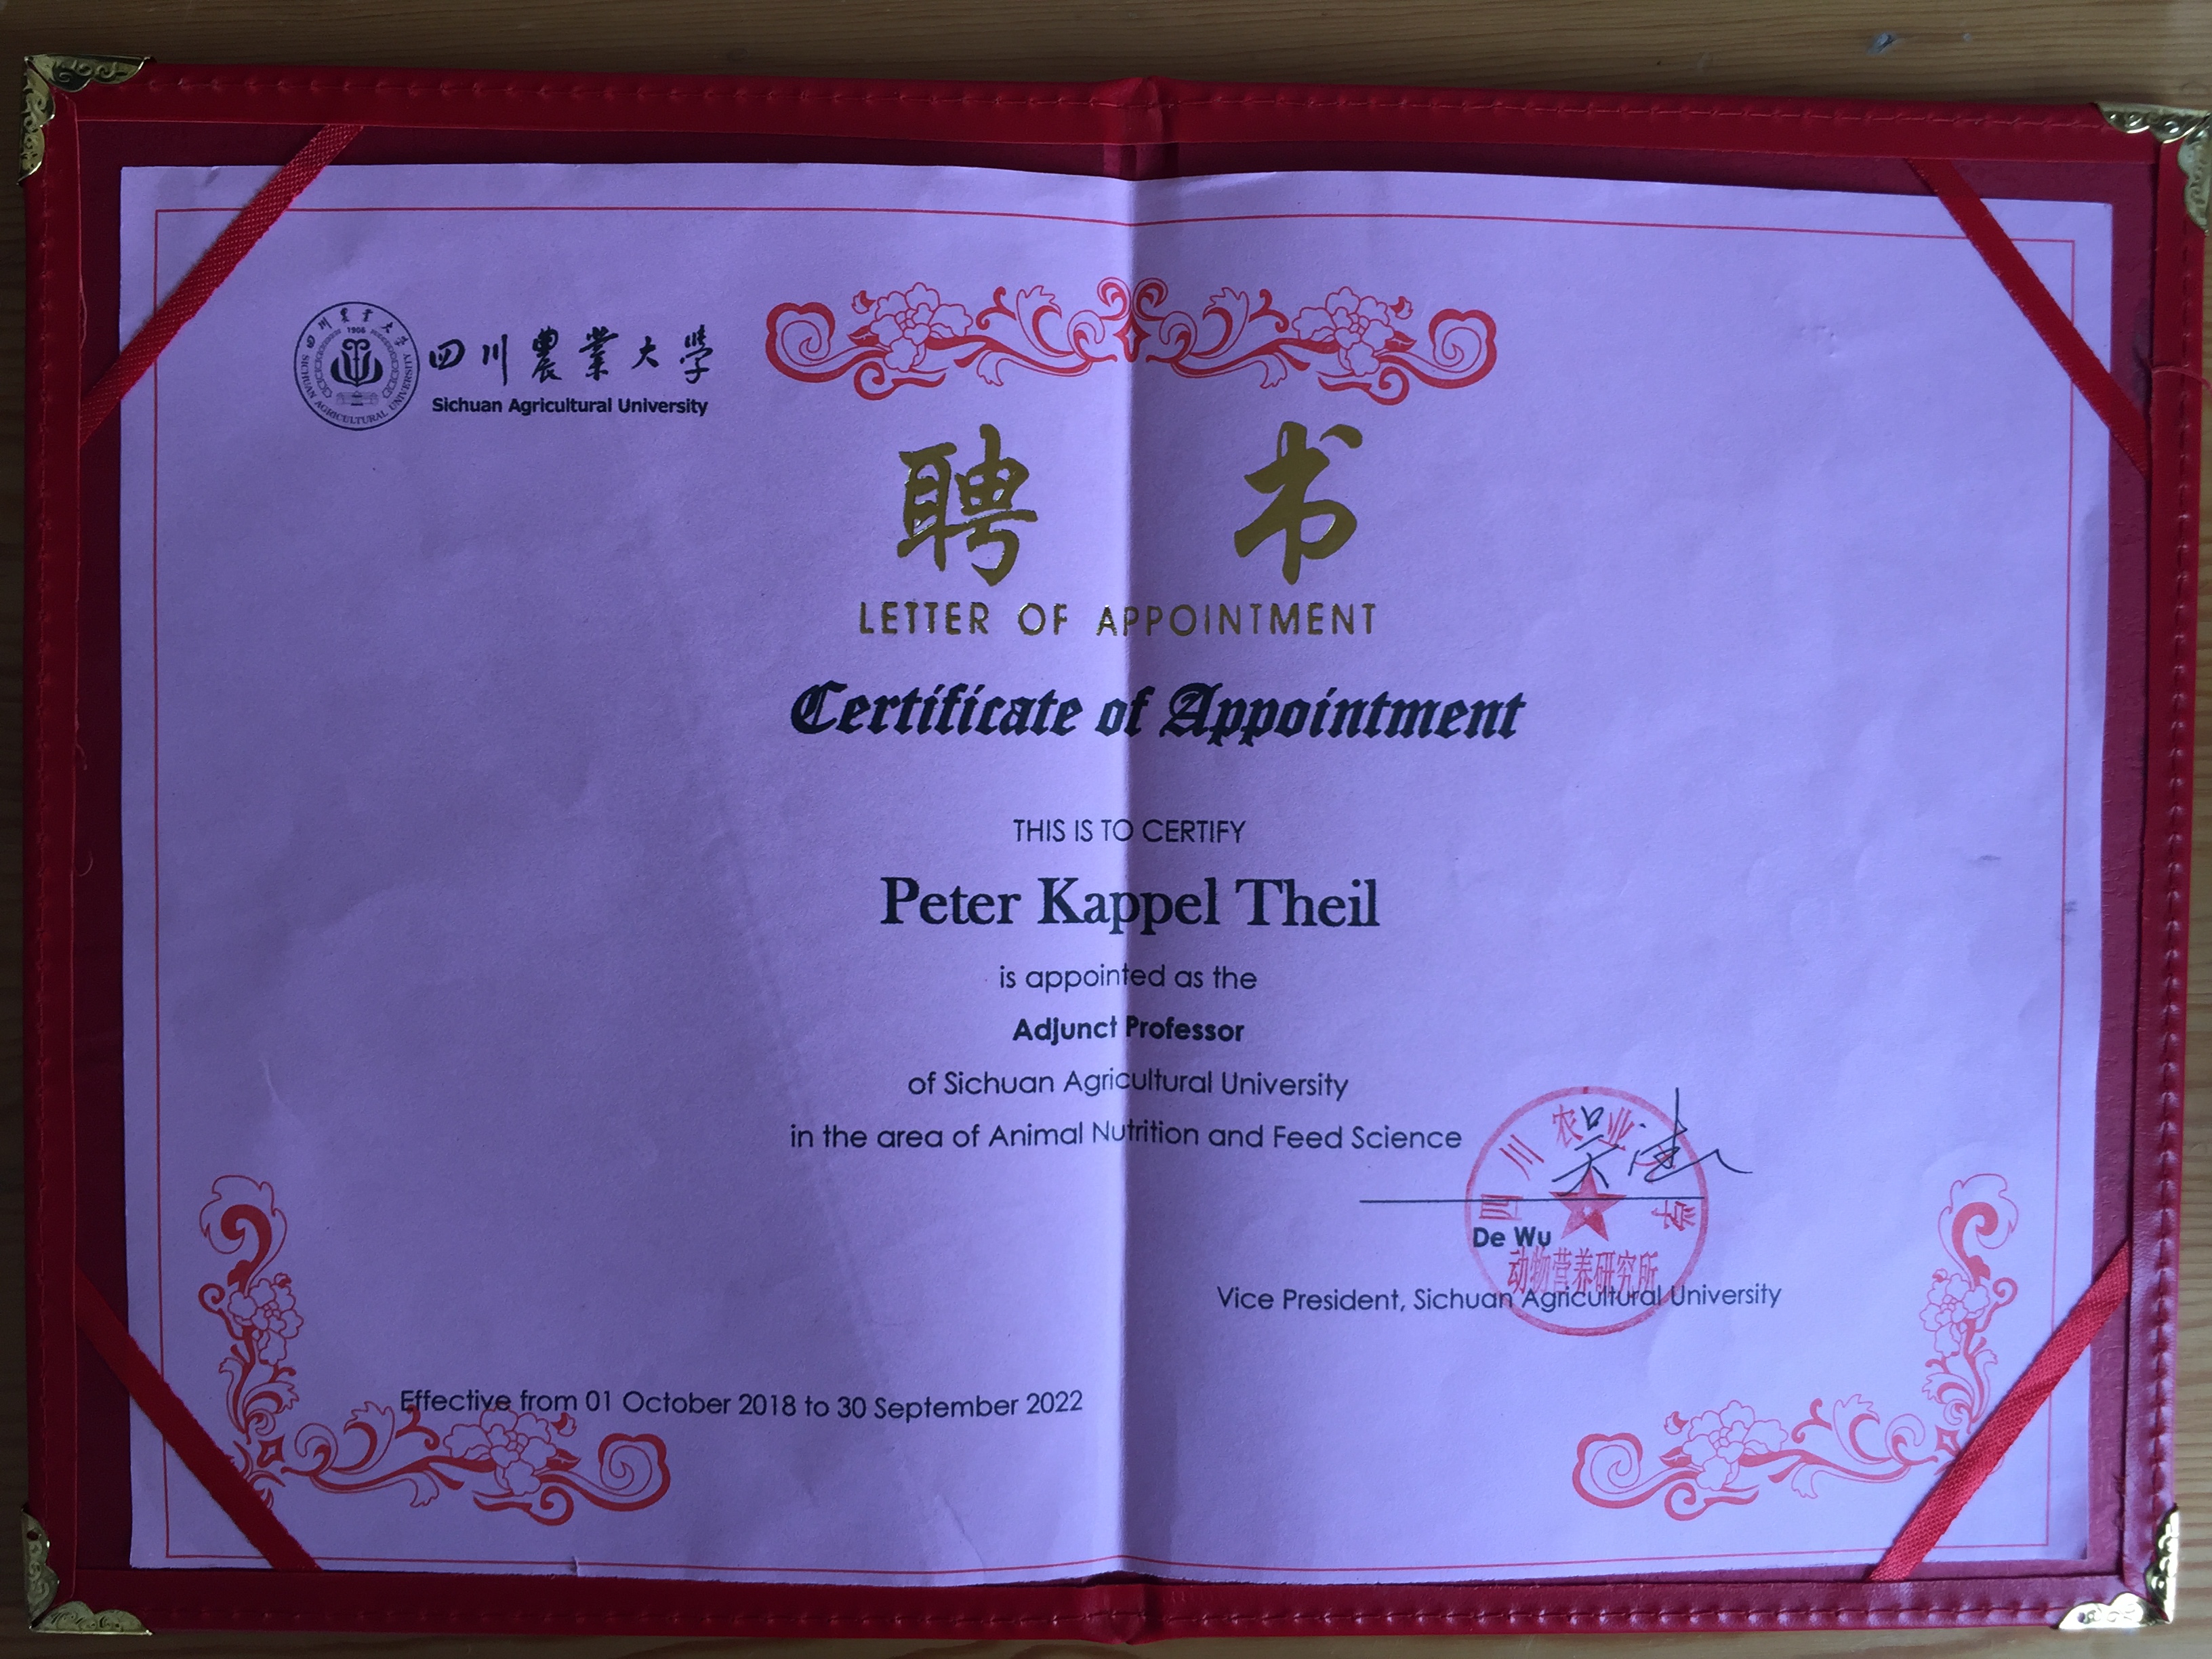 Det officielle certifikat dokumenterer udnævnelsen af Peter Kappel Theil til adjungeret professor ved Sichuan Agricultural University. Foto: Peter Kappel Theil